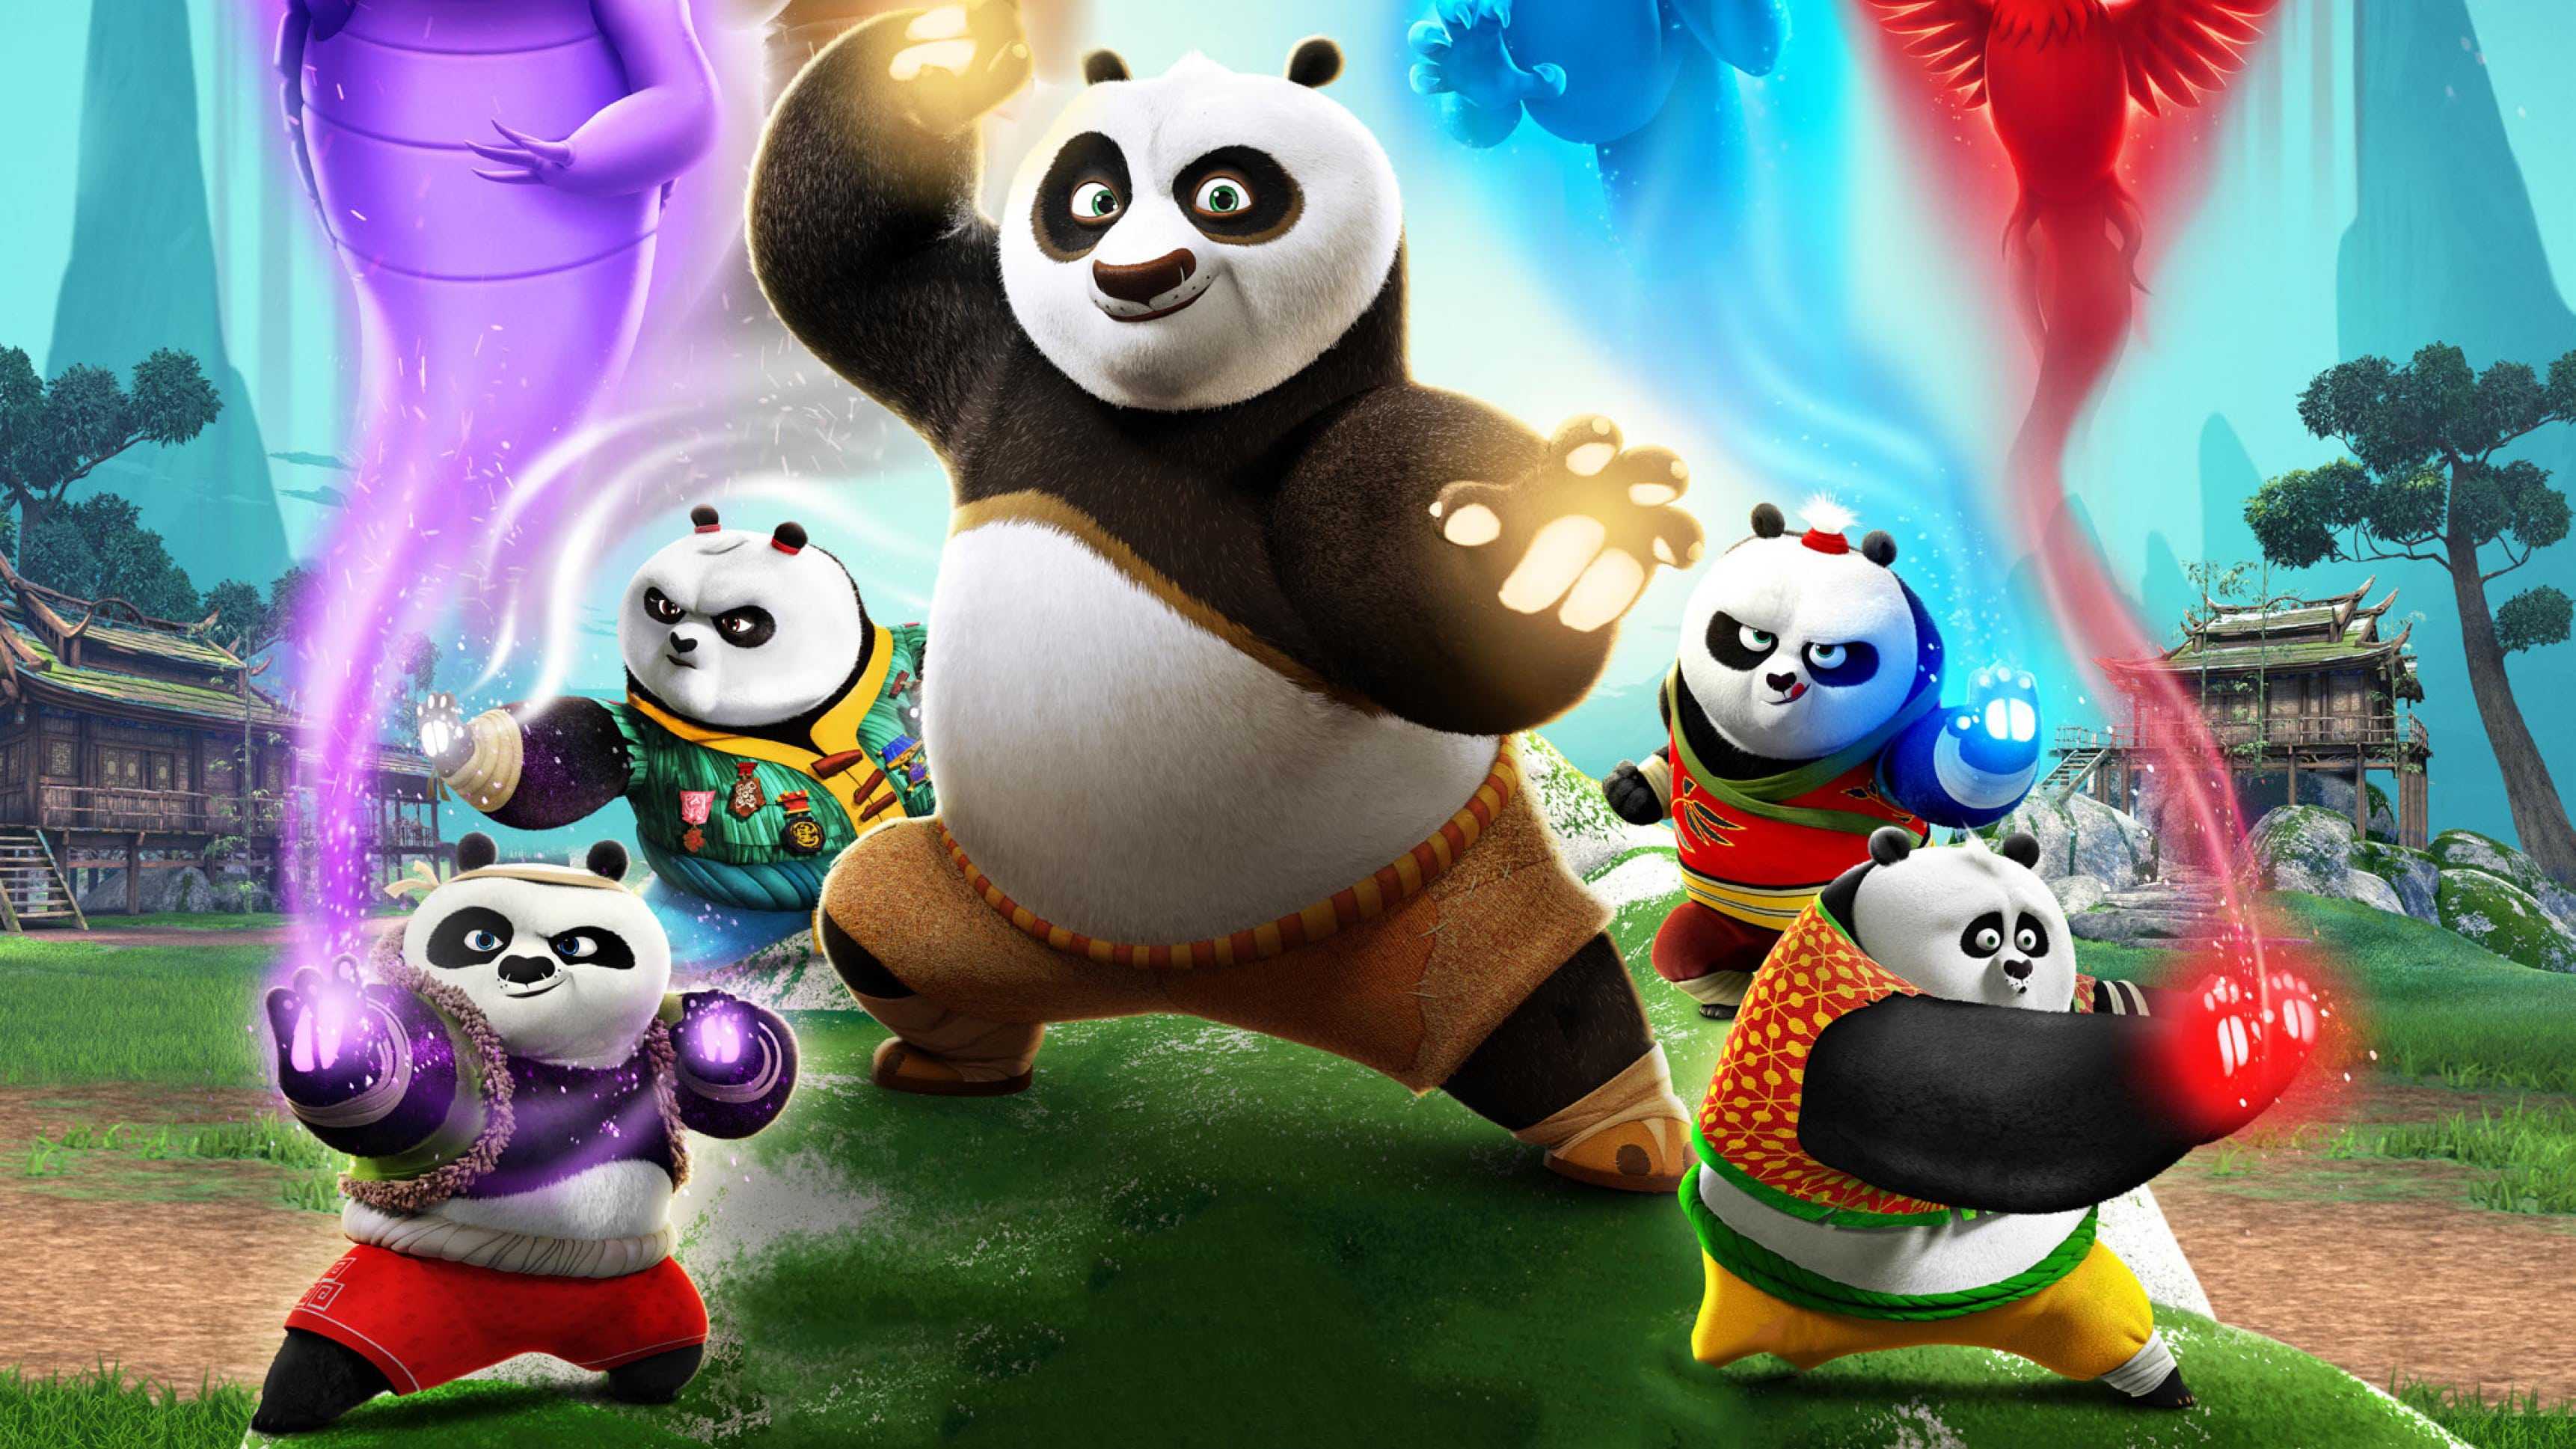 Kung Fu Panda Strikes A Heroic Pose